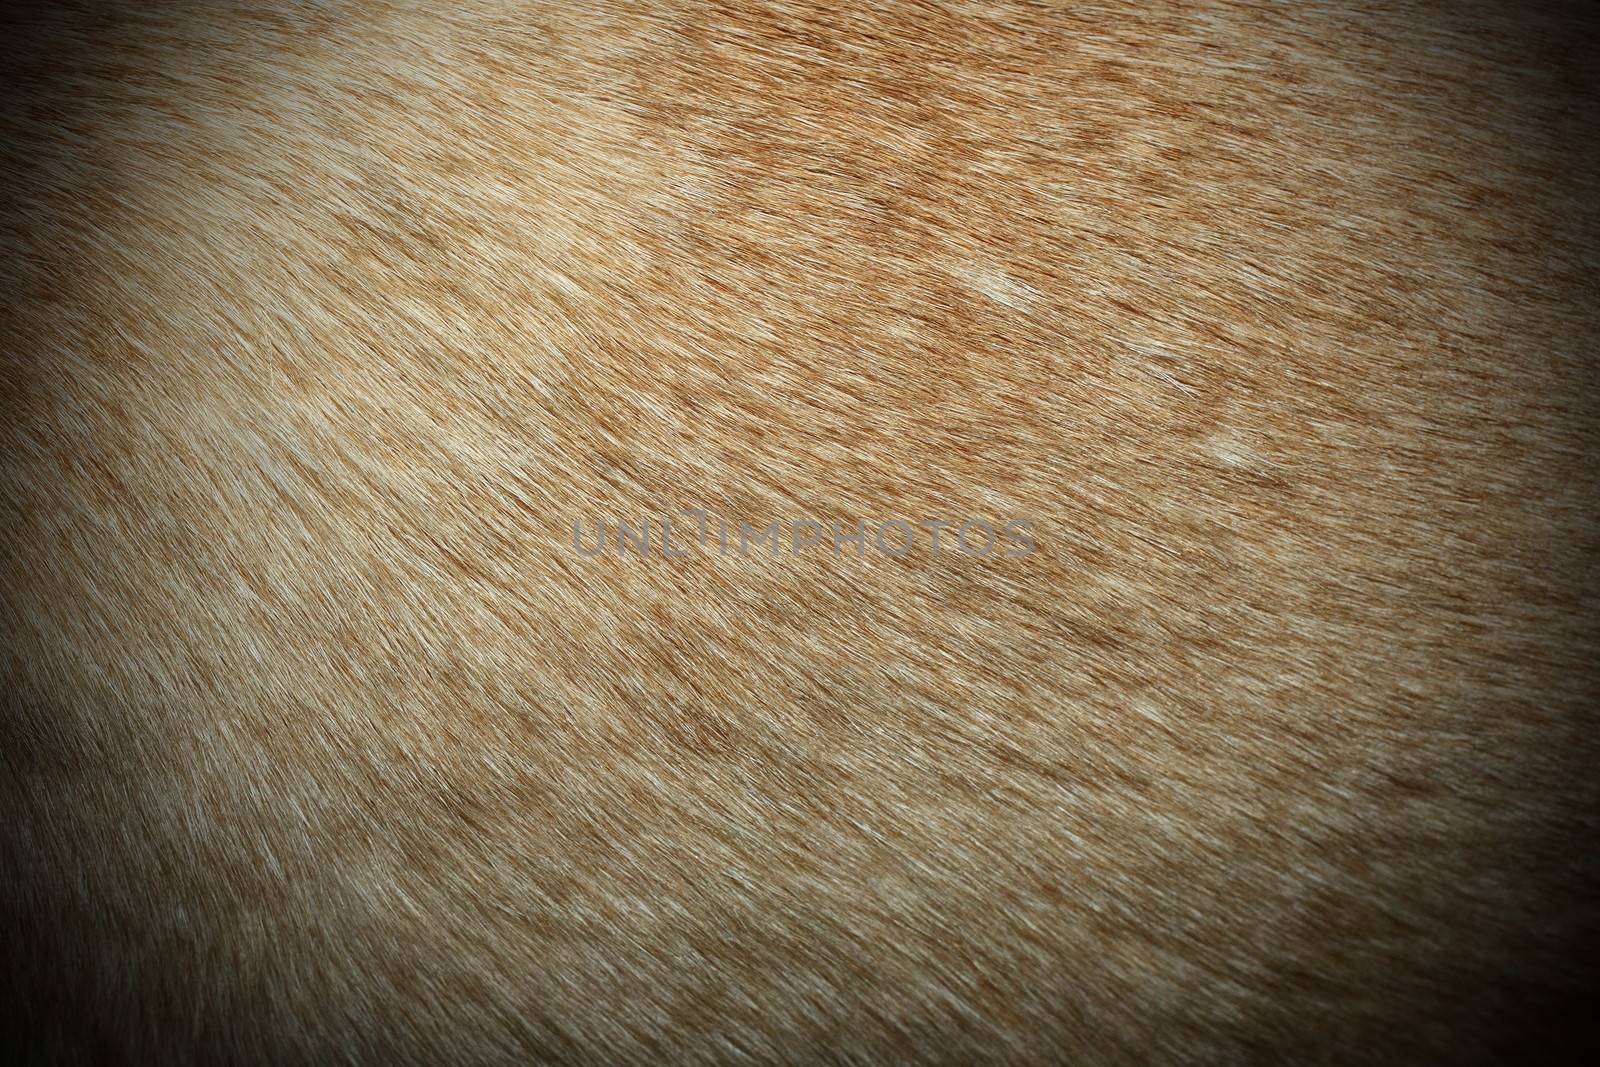 dingo textured fur, image taken on a wild australian real animal